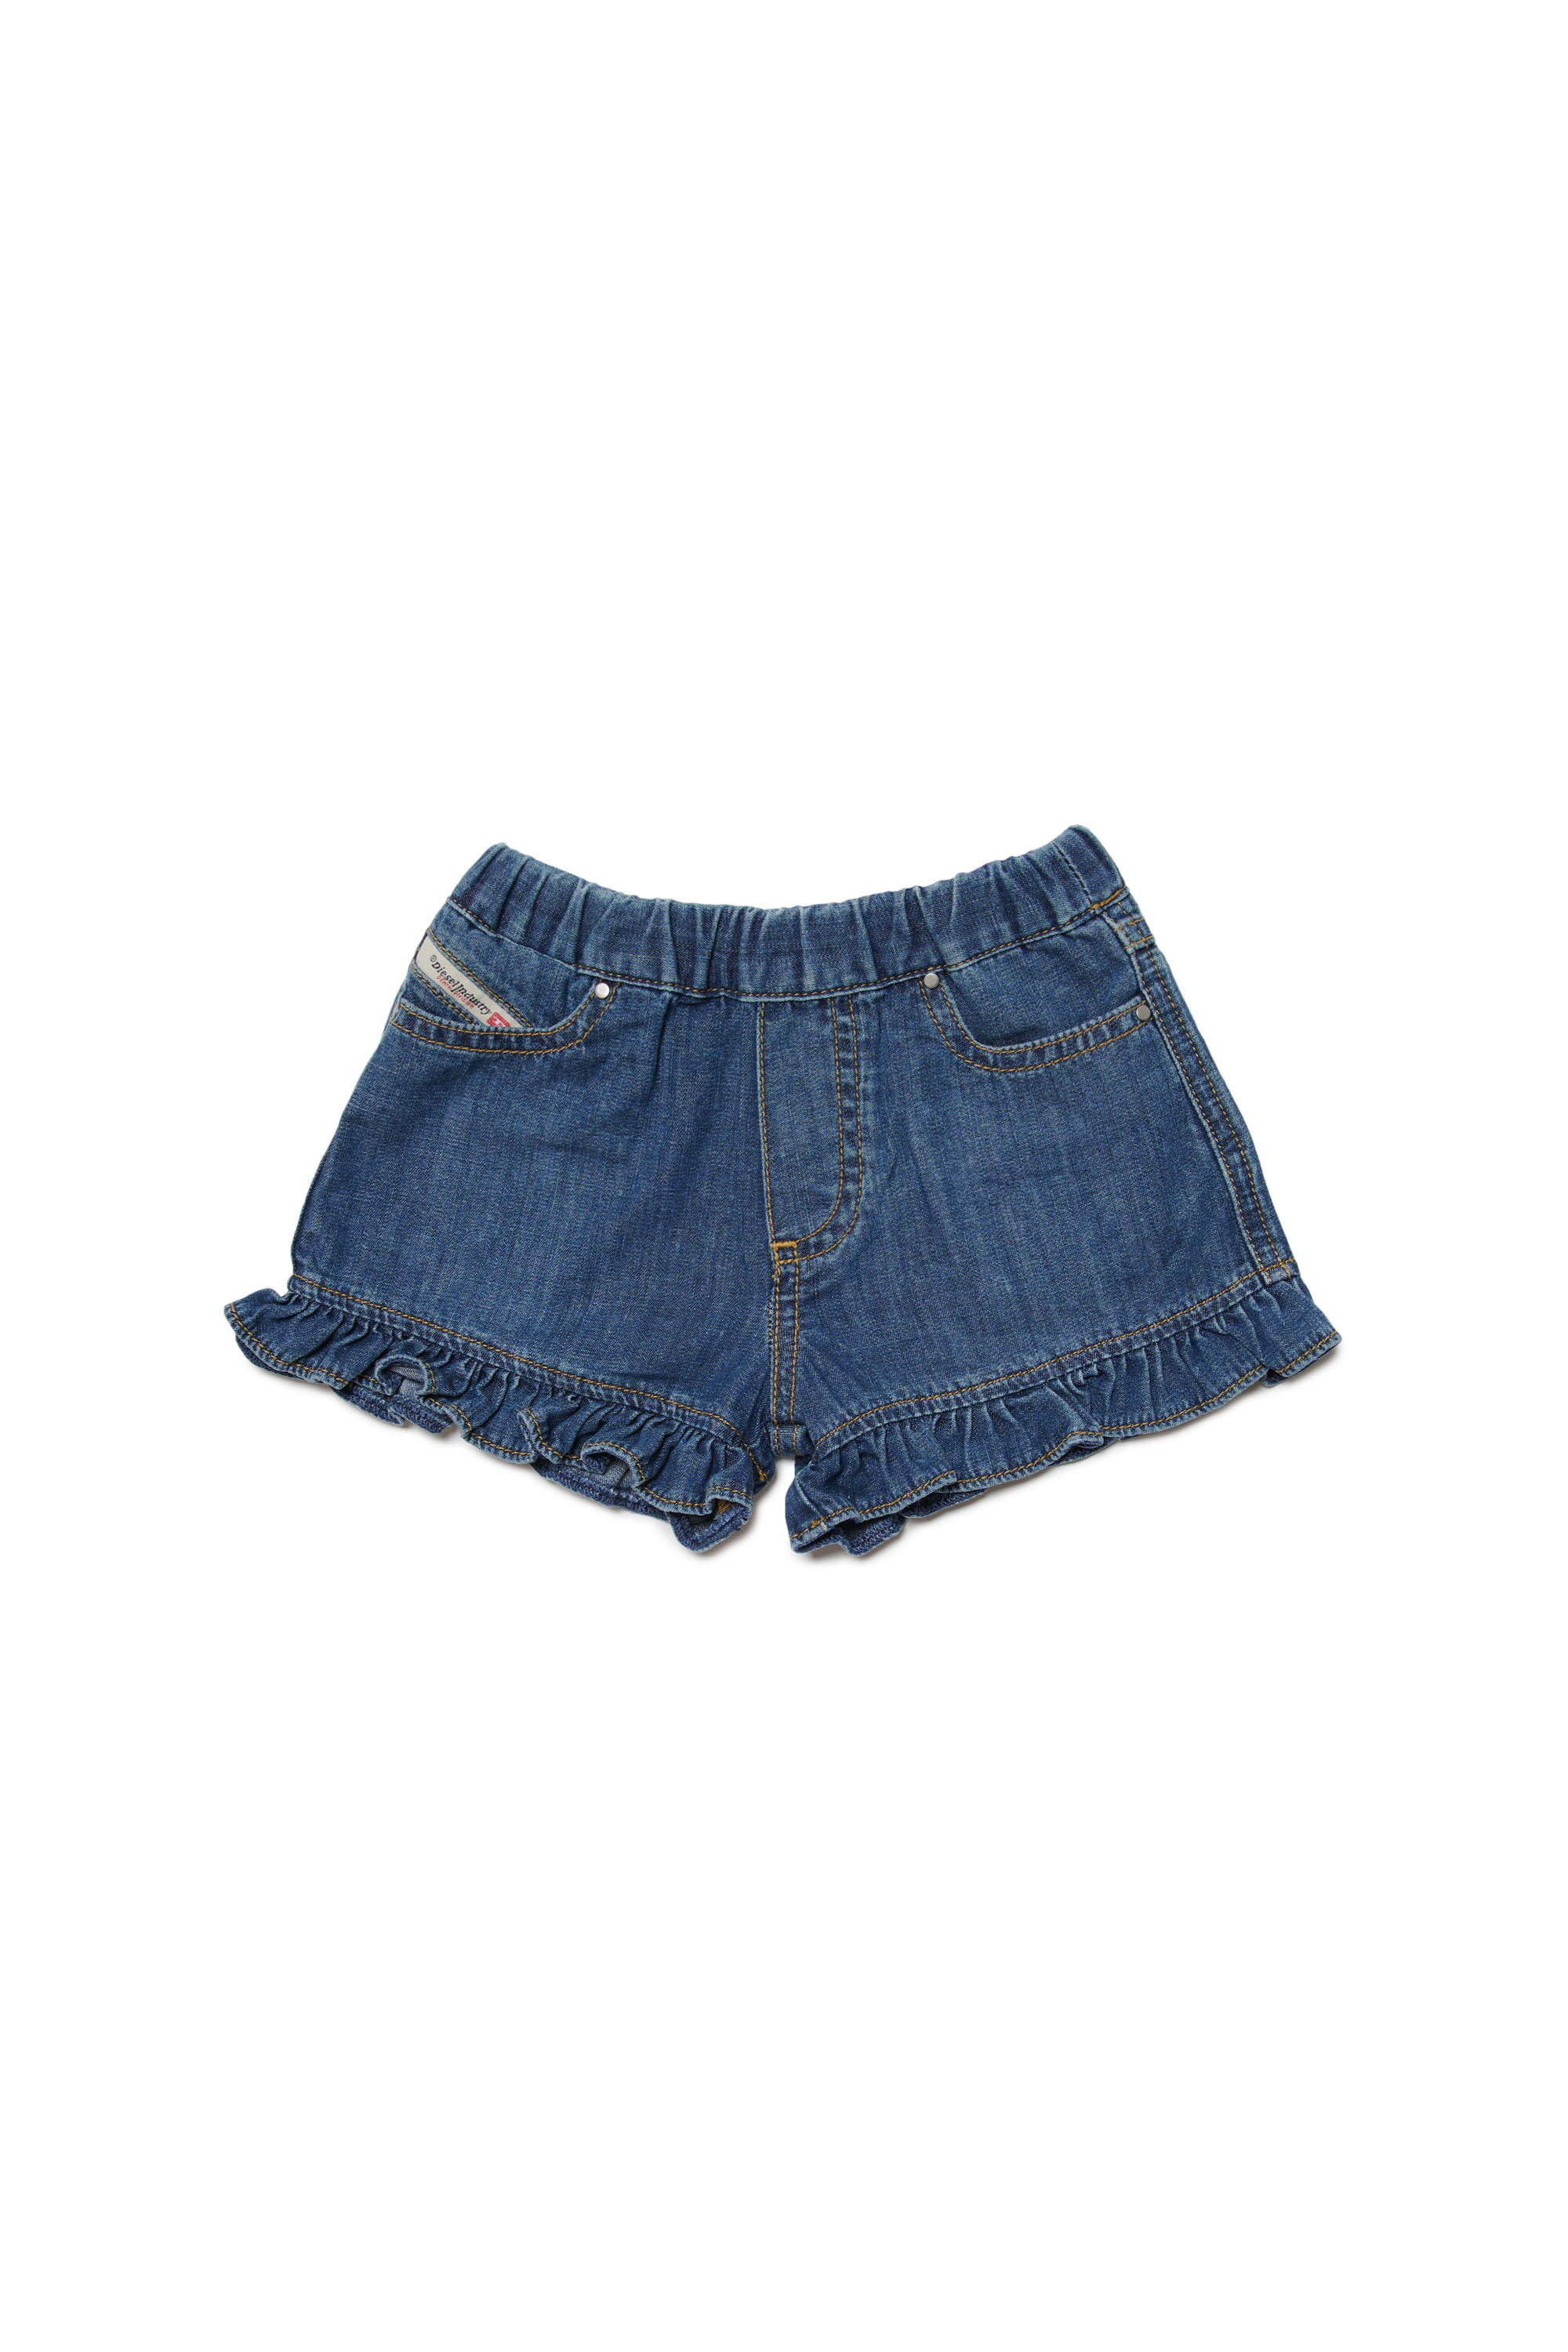 Diesel - Pantalones cortos de denim con volantes - Shorts - Mujer - Azul marino